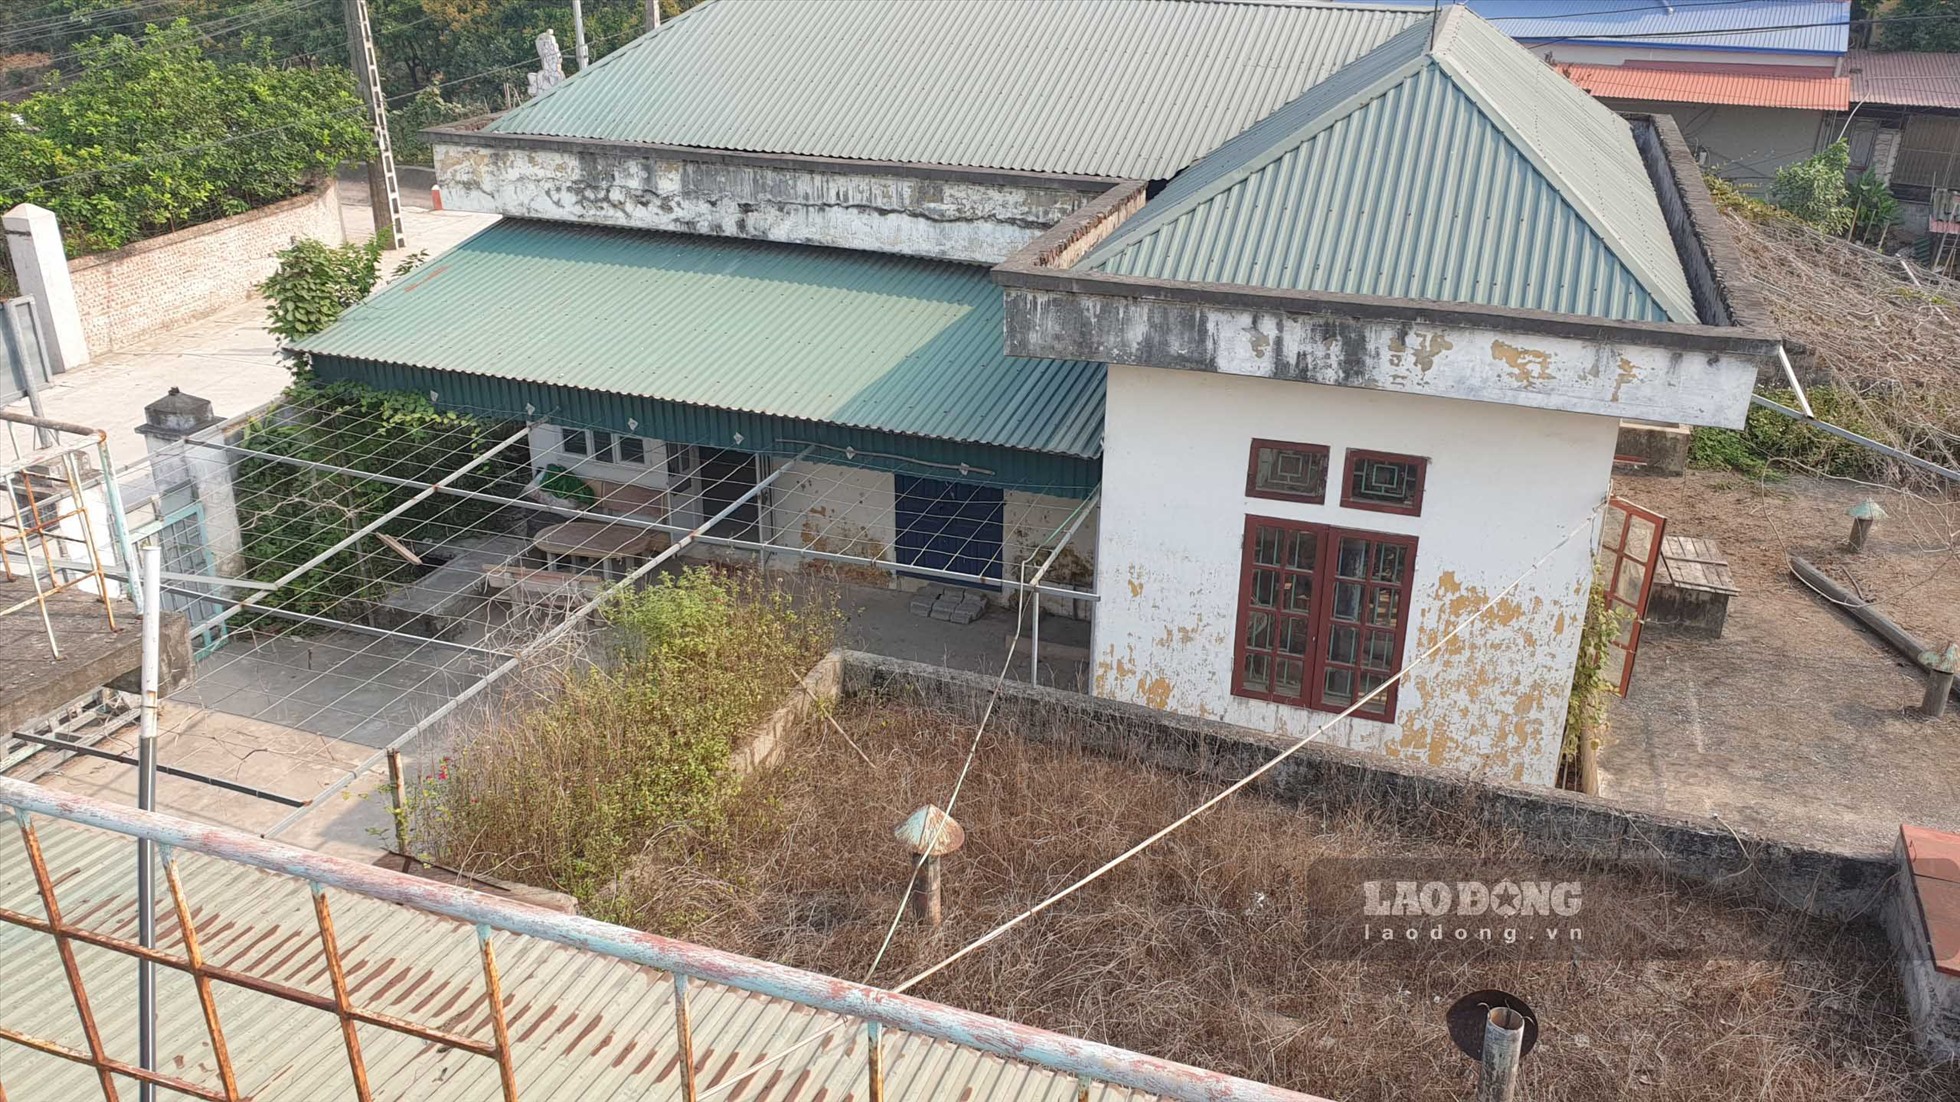 Nhà máy này đi vào hoạt động từ năm 2014, nhưng đã bỏ hoang cách đây 5 năm,  do UBND tỉnh Hưng Yên đã có văn bản về đảm bảo nguồn nước sạch, quy định các nhà máy nước sạch phải sử dụng nguồn nước mặt hoặc nước ngầm. Trong khi đó, nhà máy lấy nguồn từ nước nội đồng, không đảm bảo vệ sinh.